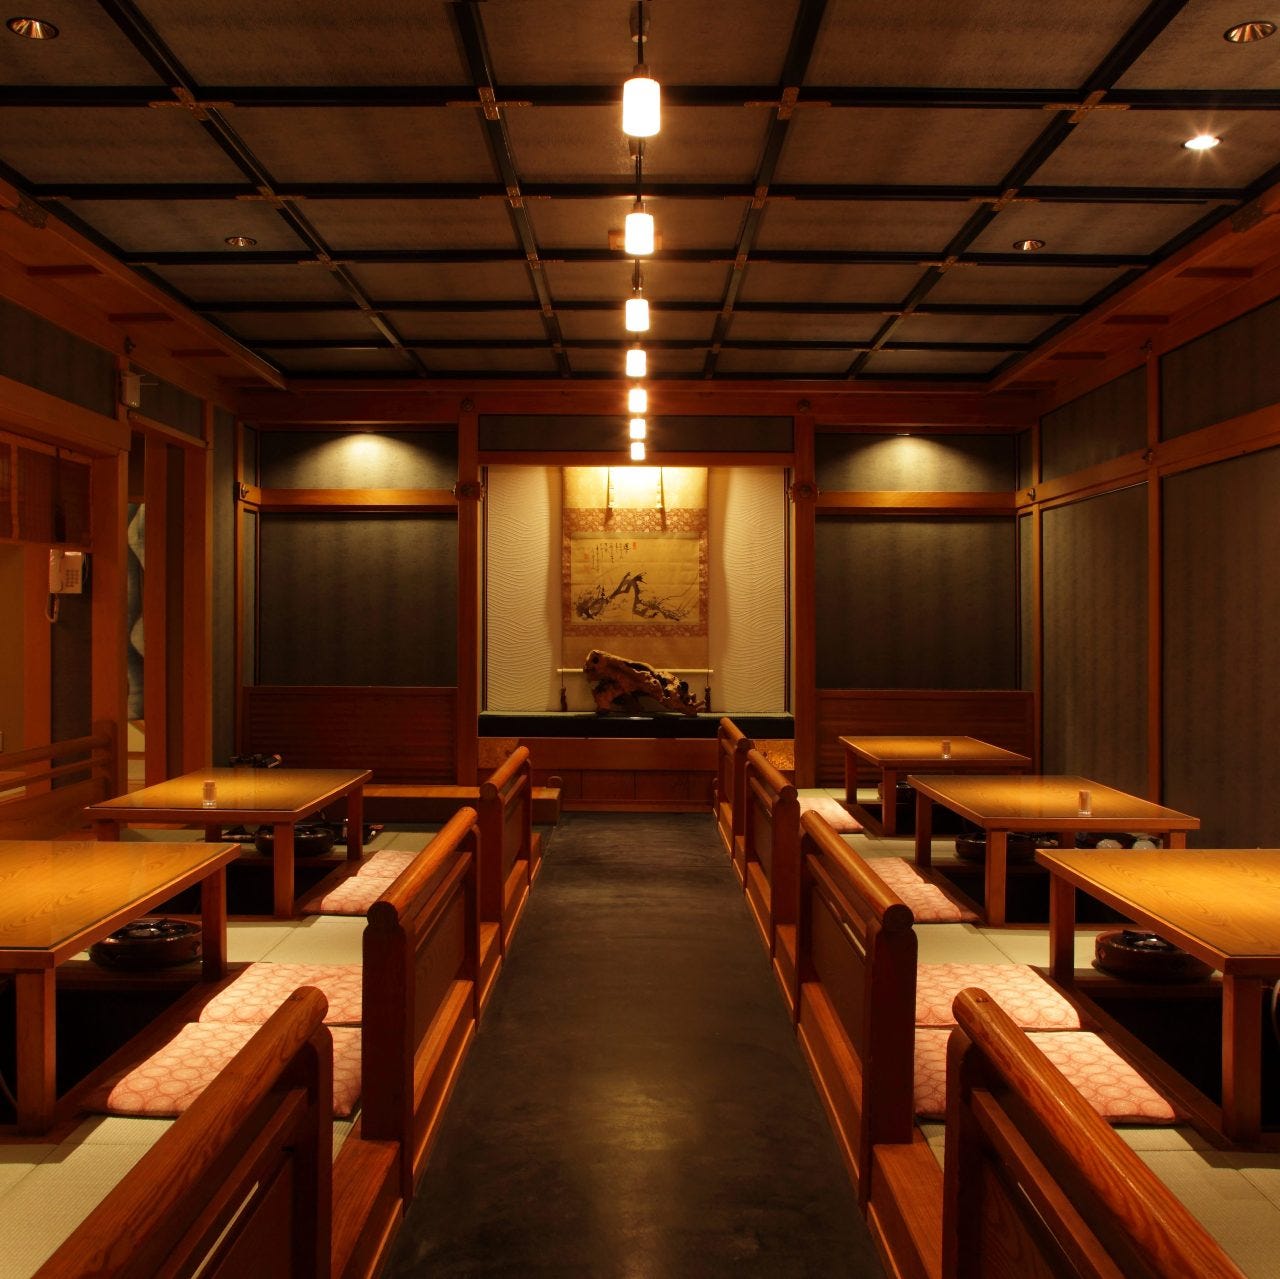 21年 最新グルメ 京都 個室のある料亭 レストラン カフェ 居酒屋のネット予約 京都版